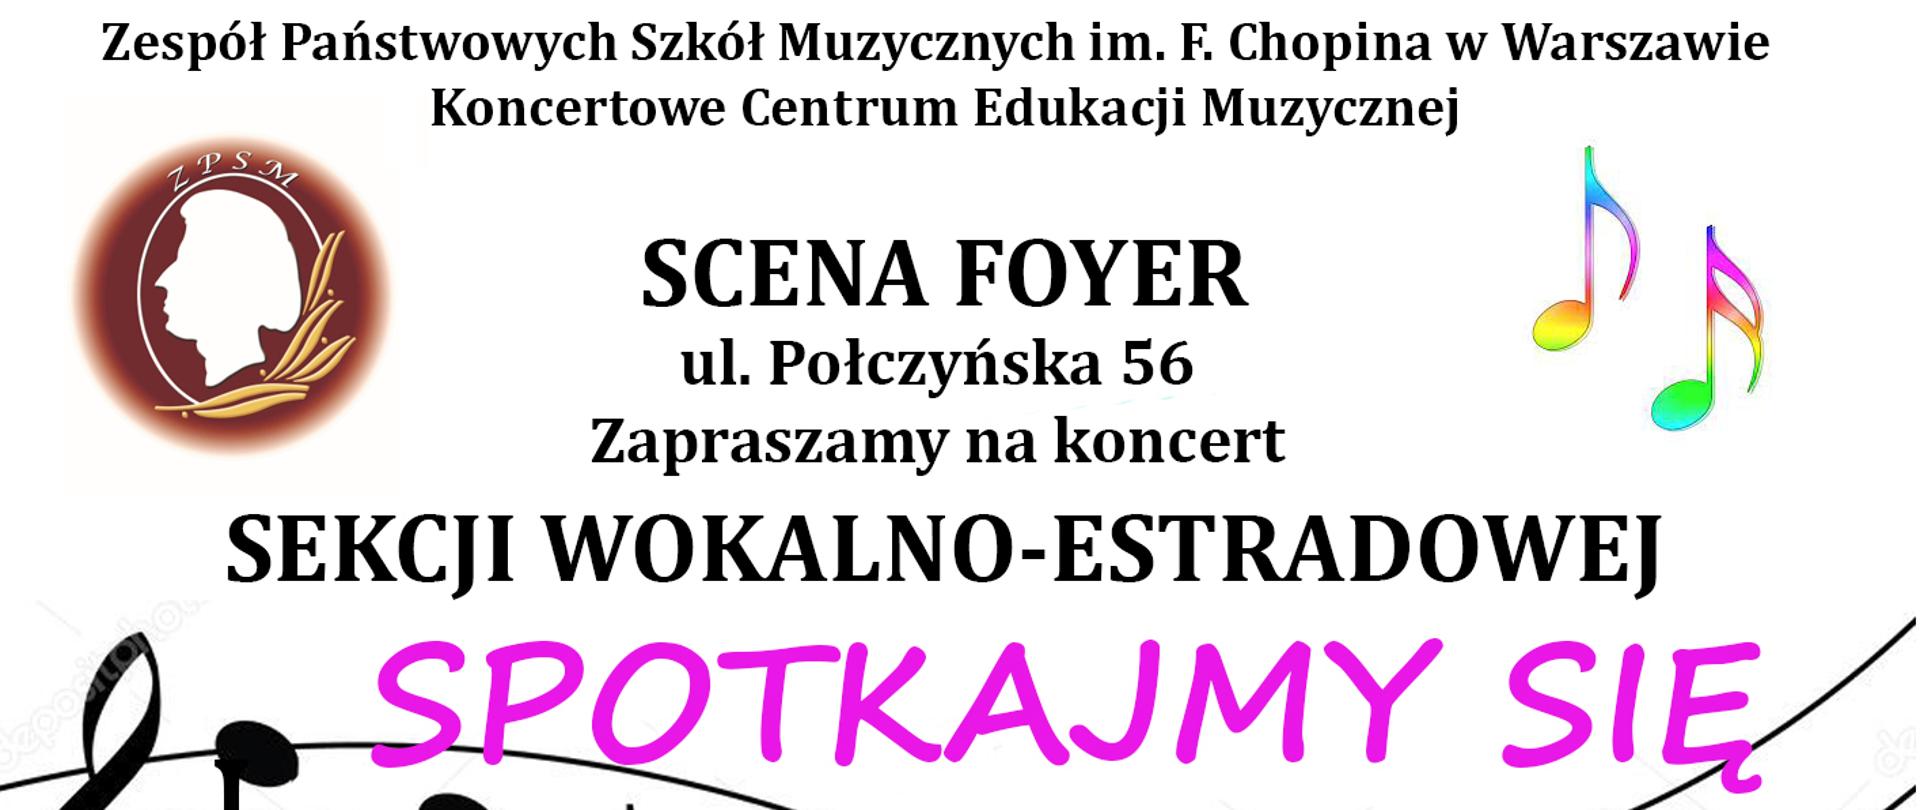 Afisz koncertu Sekcji Wokalno-Estradowej - Na jasnym tle logo Szkoły oraz napisy: ZPSM im. F. Chopina w Warszawie, "Spotkajmy się na Scenie Foyer, 21.112022, godz. 18.00"